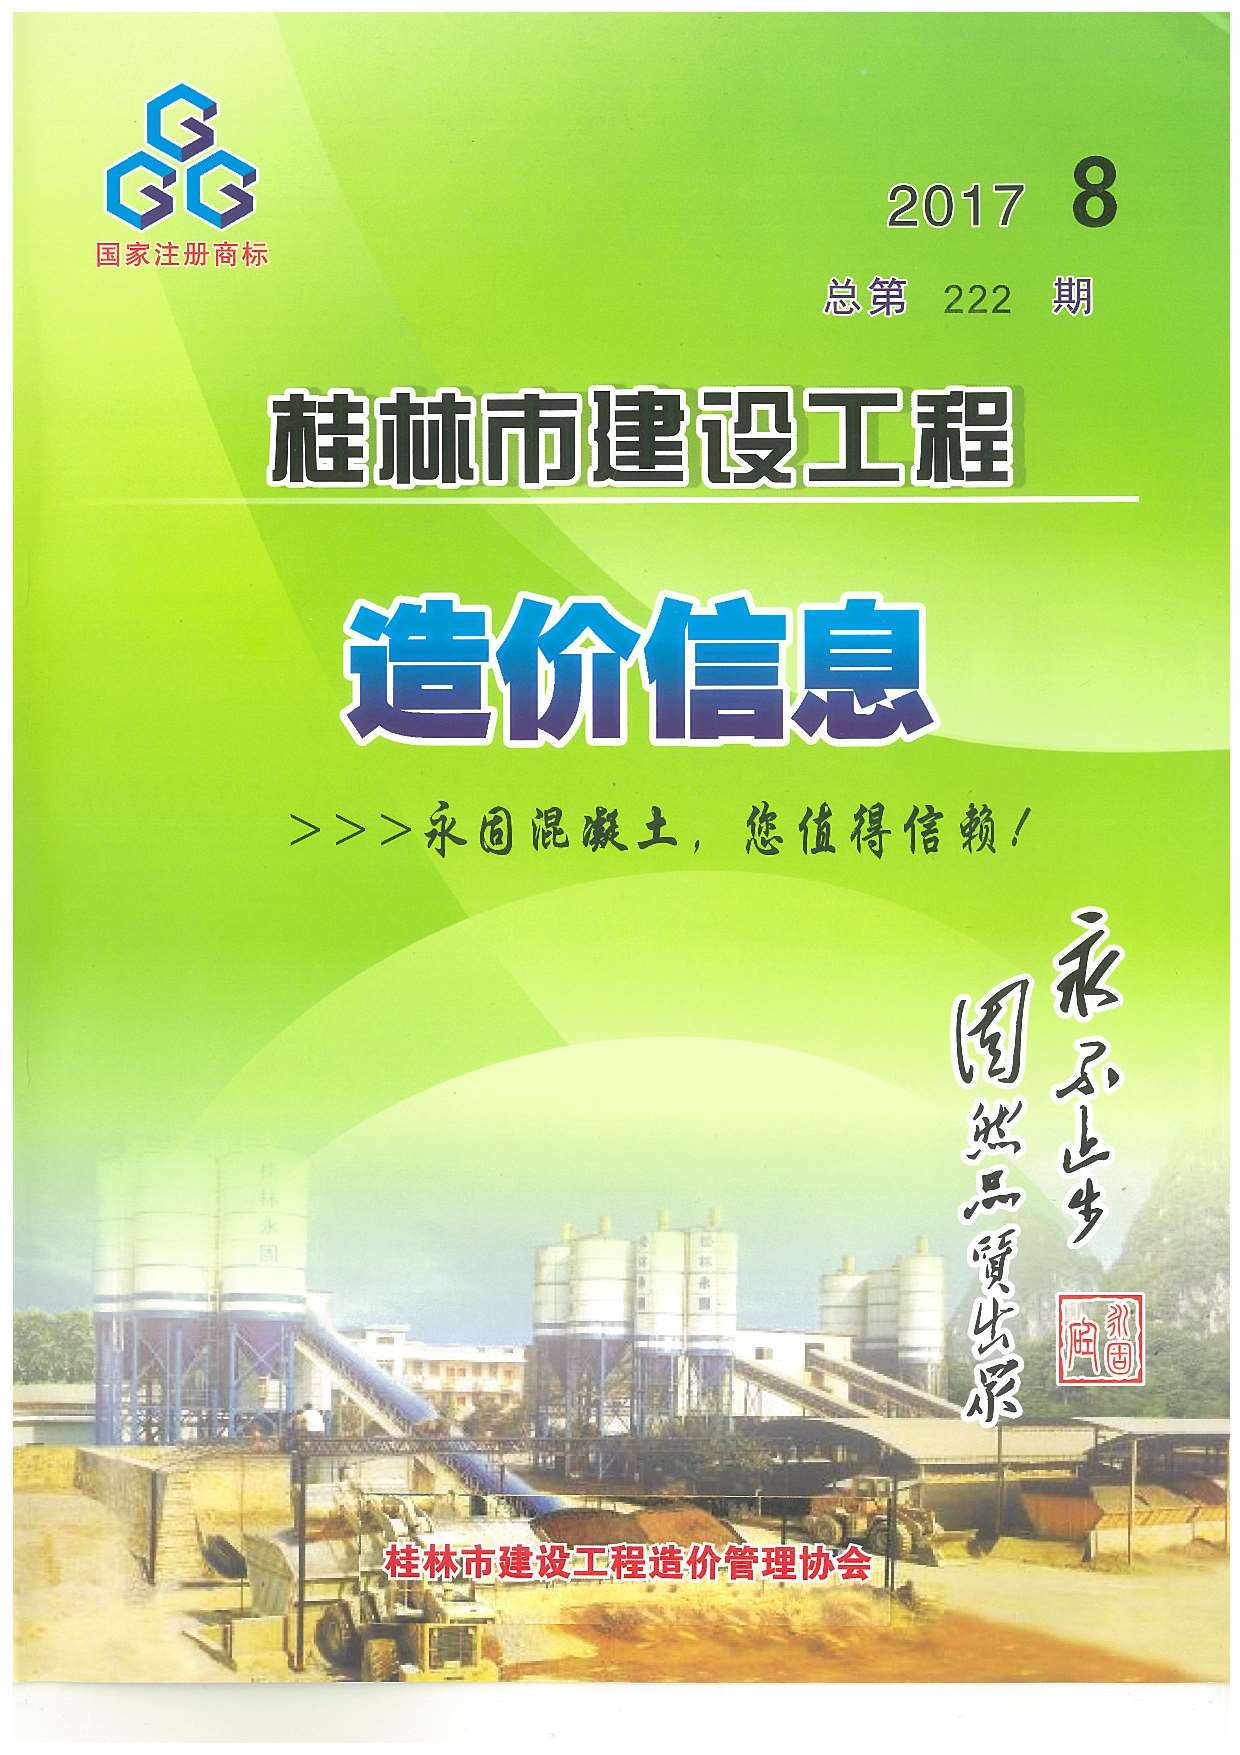 桂林市2017年8月建设工程造价信息